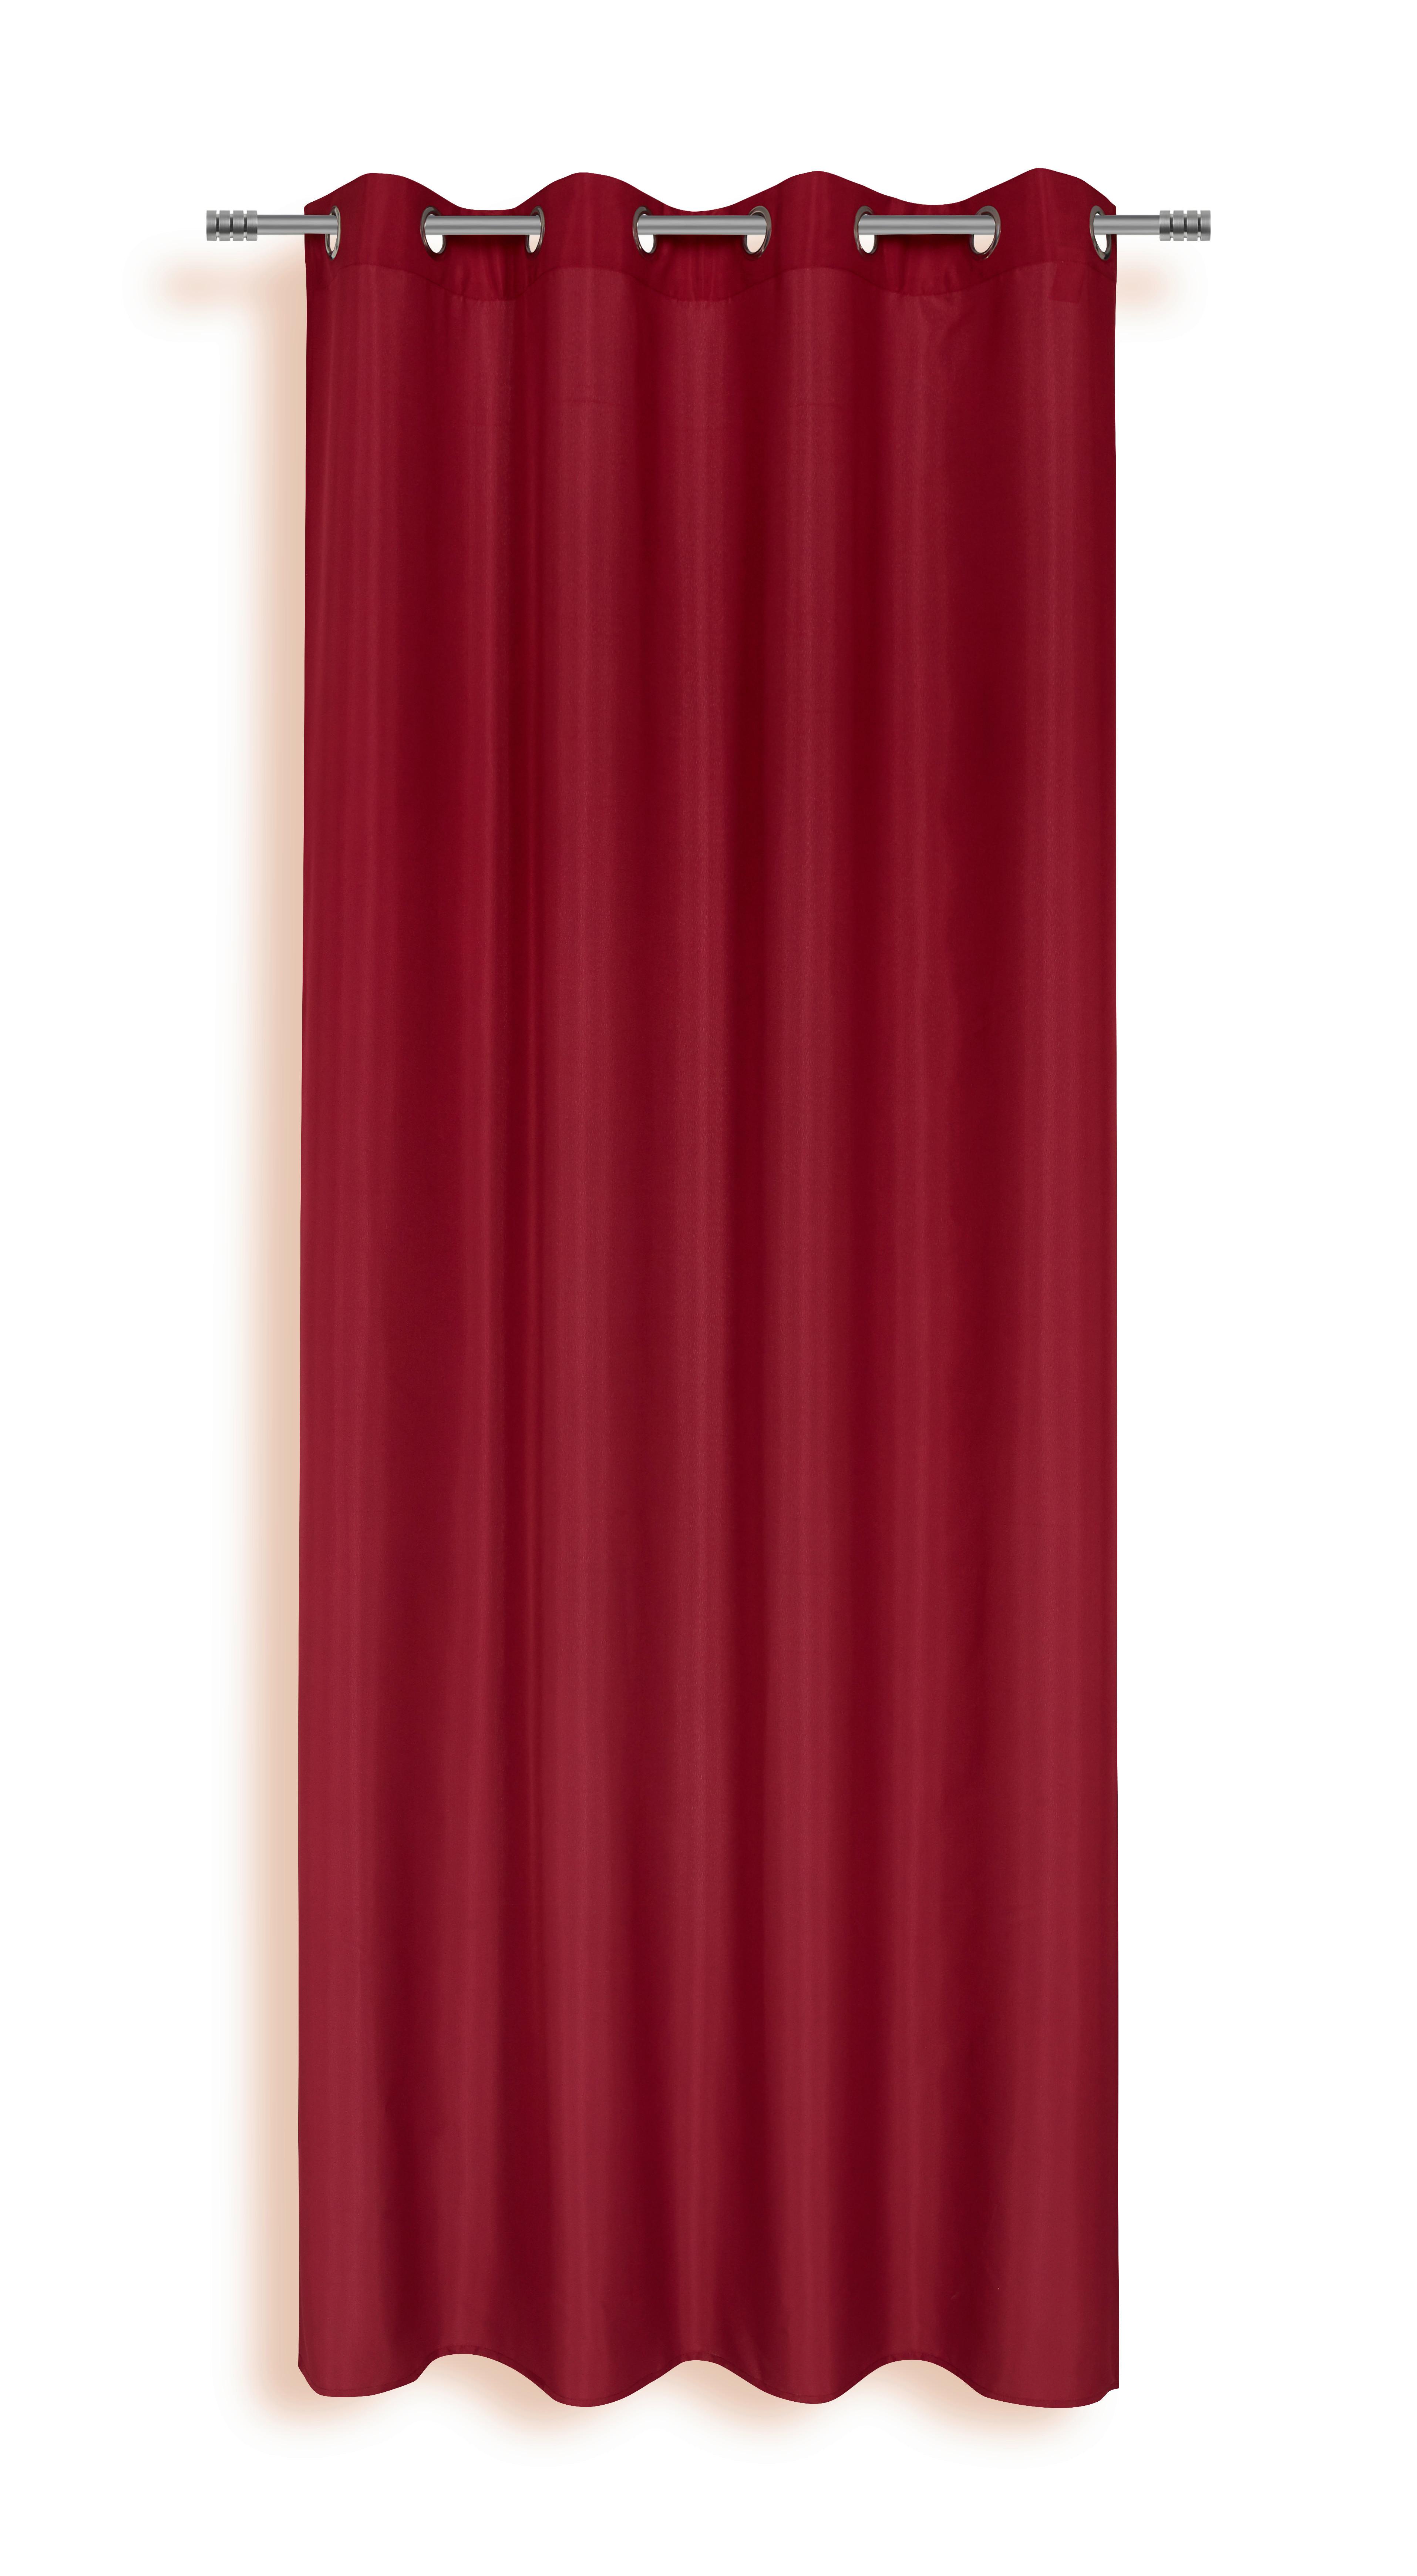 Készfüggöny Isolde - Piros, konvencionális, Textil (140/245cm) - Ondega